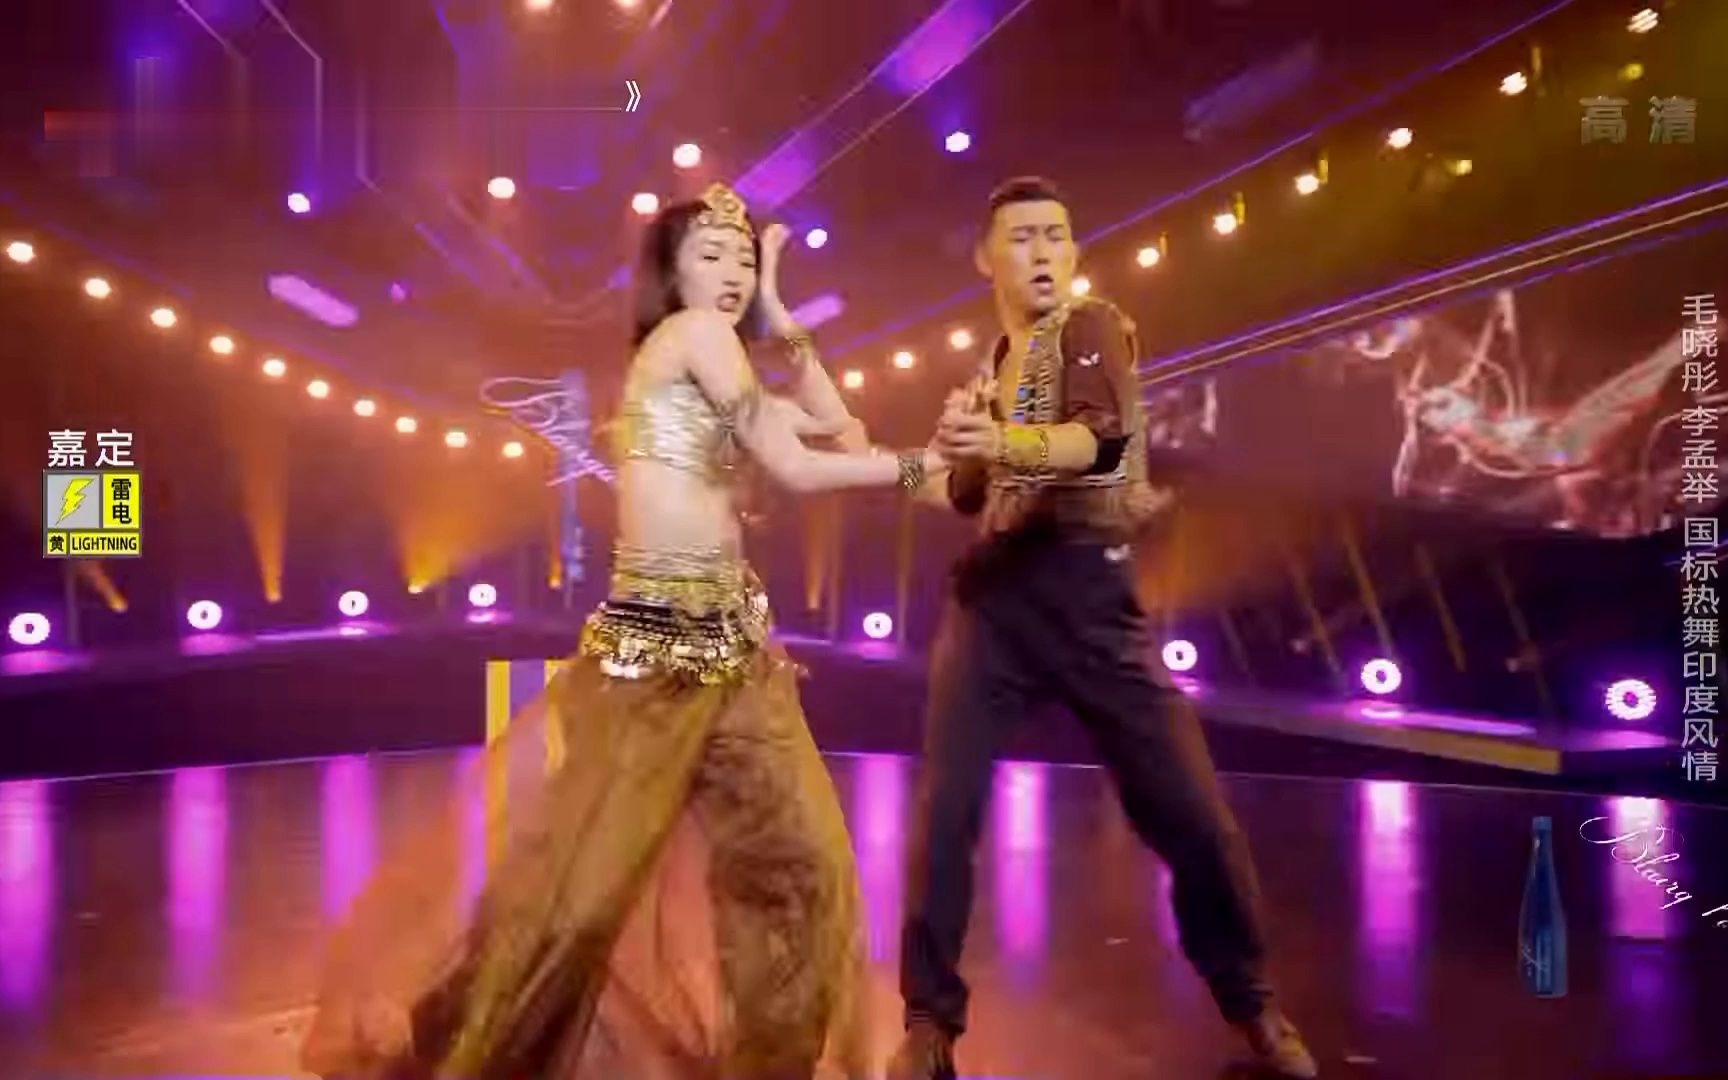 毛晓彤 的国标热舞印度风情真是绝了！